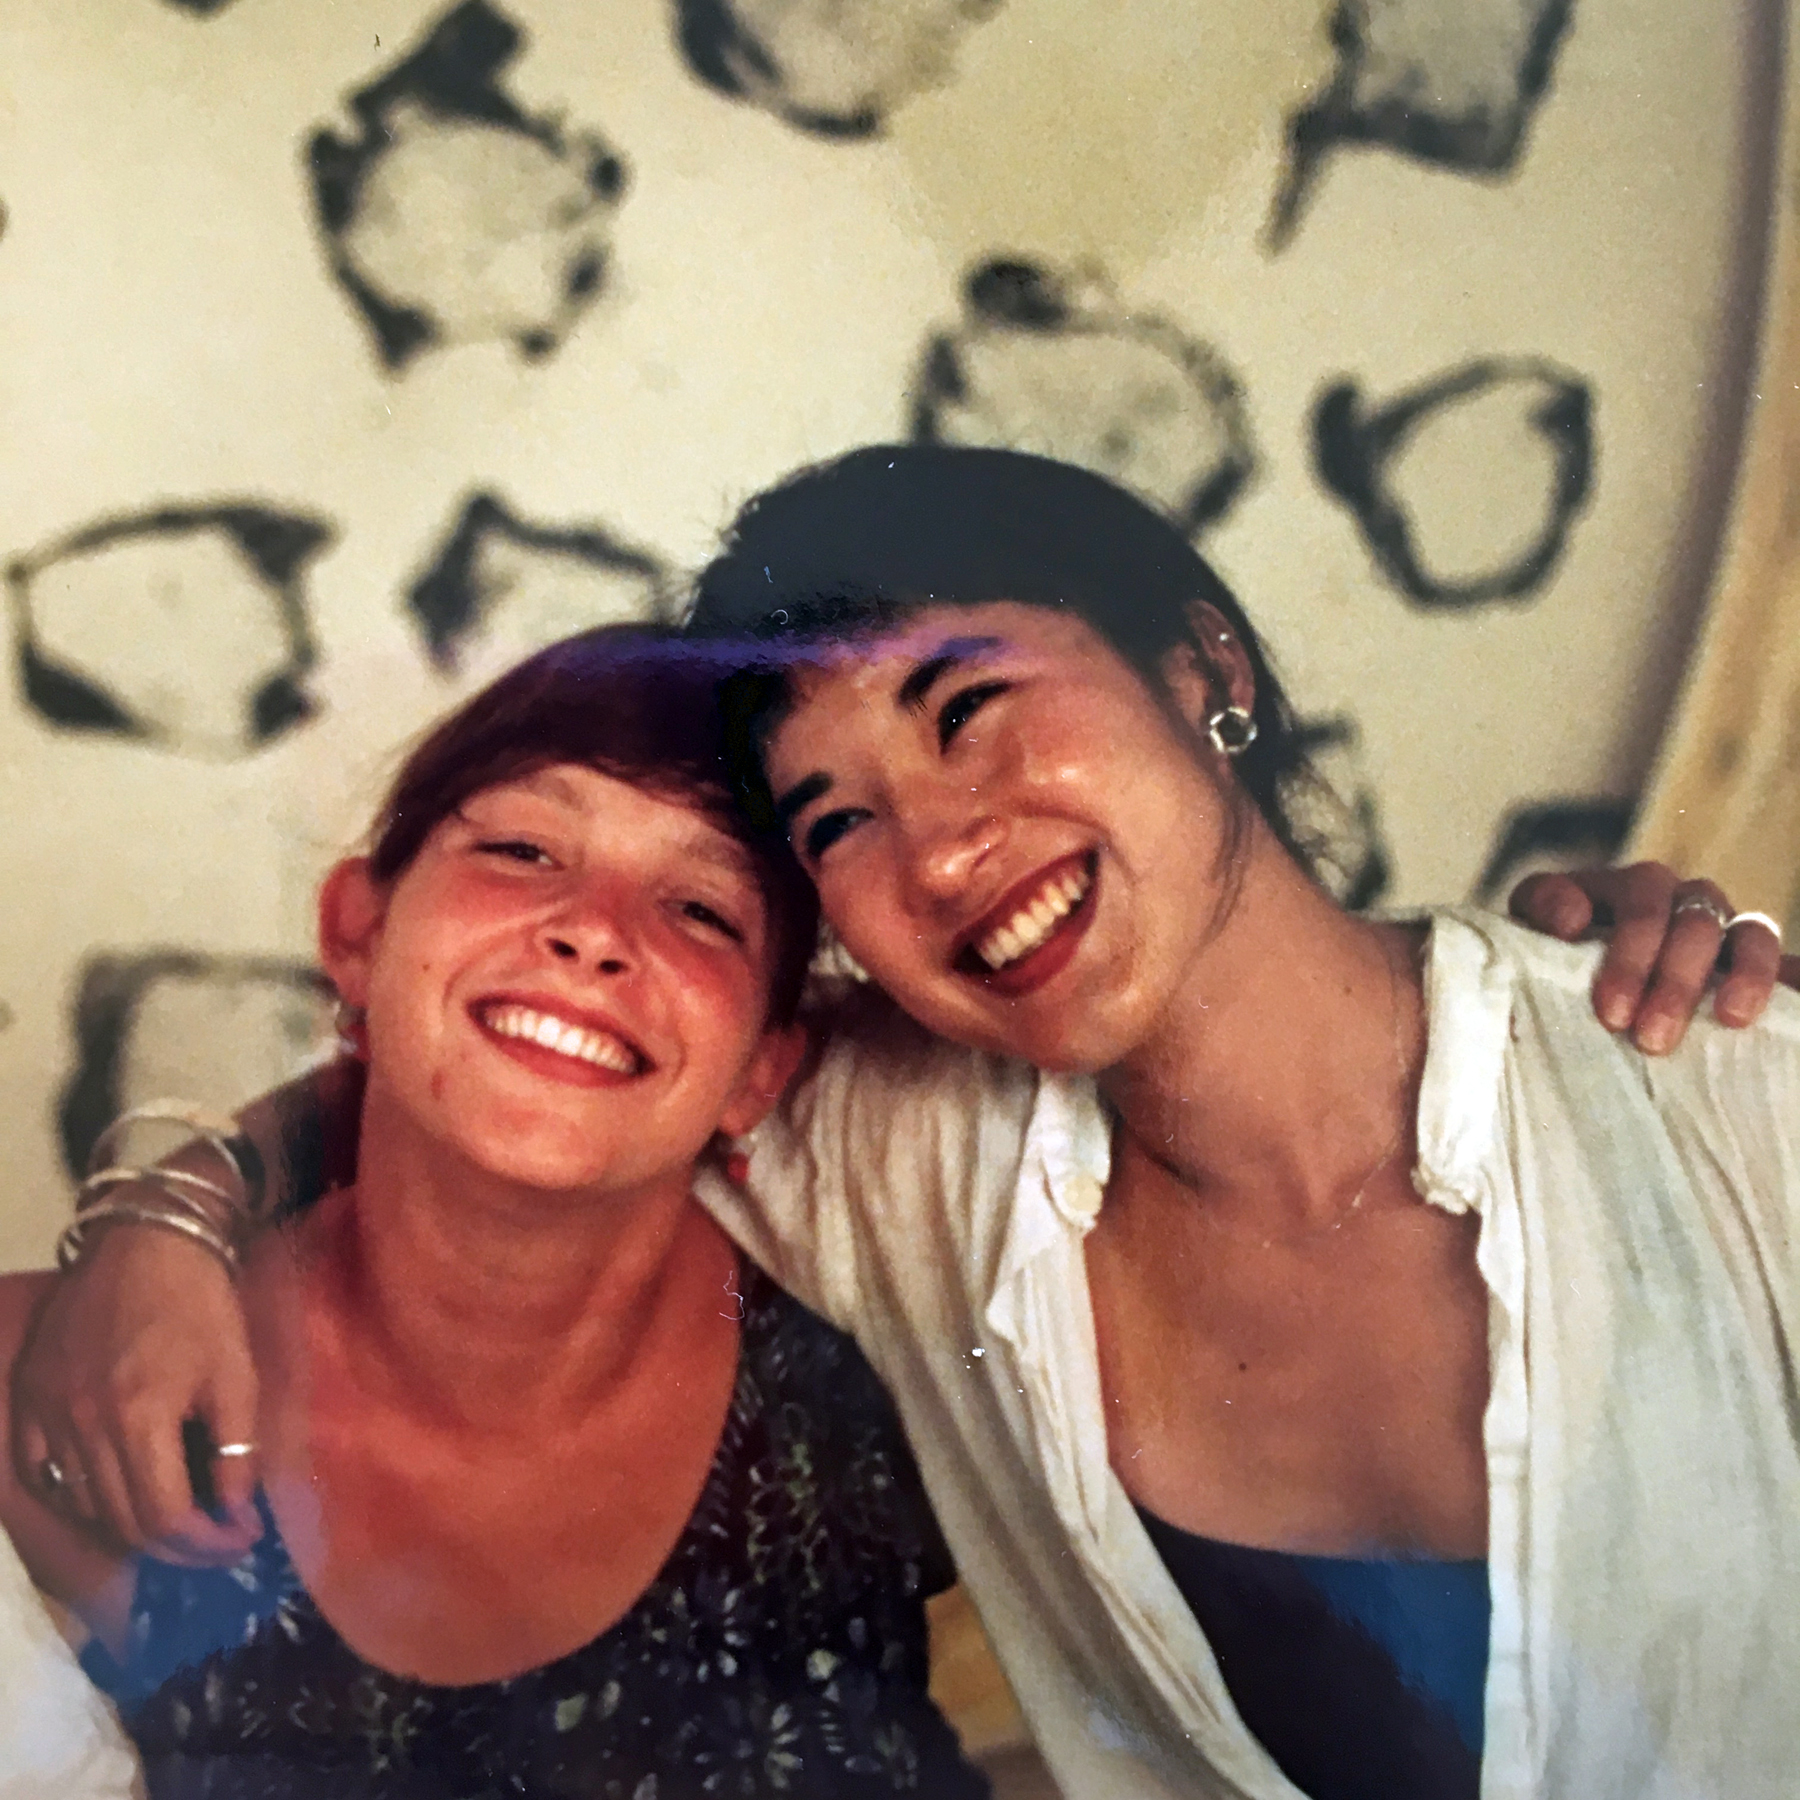 Tina and Sasha ca. 1991